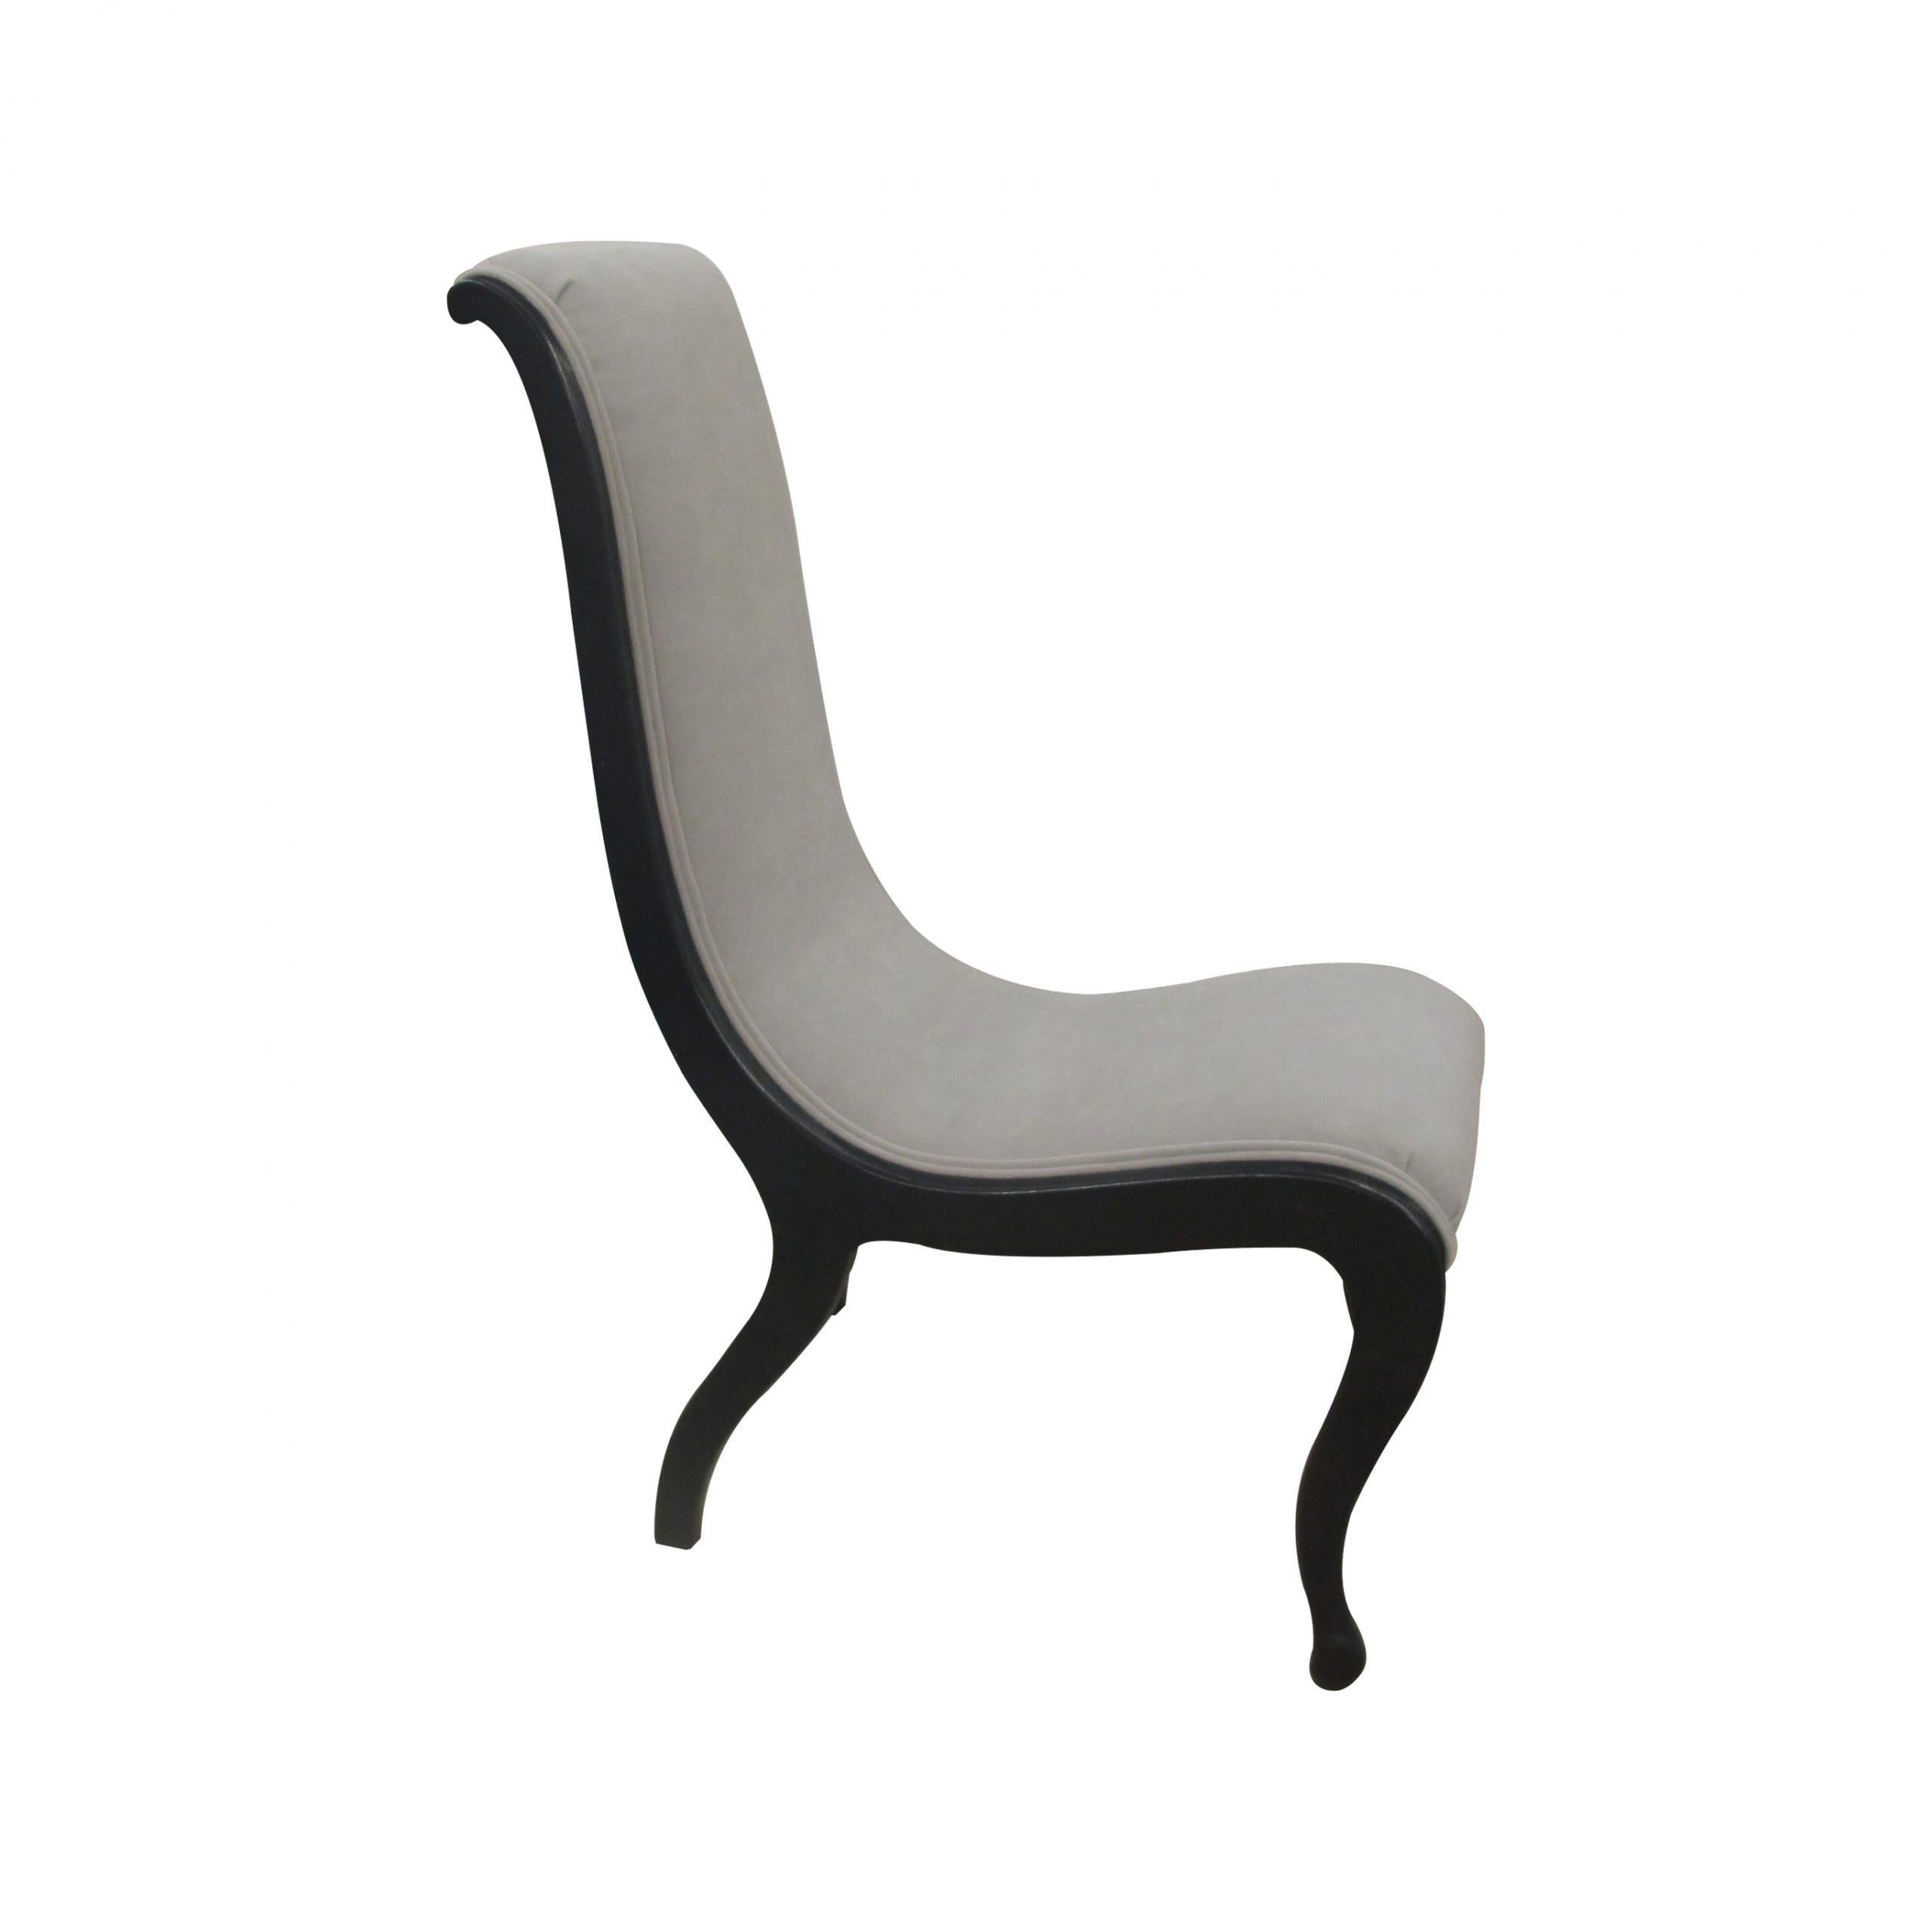 Voici une chaise à col de cygne très élégante et polyvalente, avec un magnifique cadre noir incurvé, suédoise vers les années 1930. La chaise a été récemment recouverte d'un tissu lavable de type suédine. 

Dimensions : H95 cm x L50 cm x P75 cm
